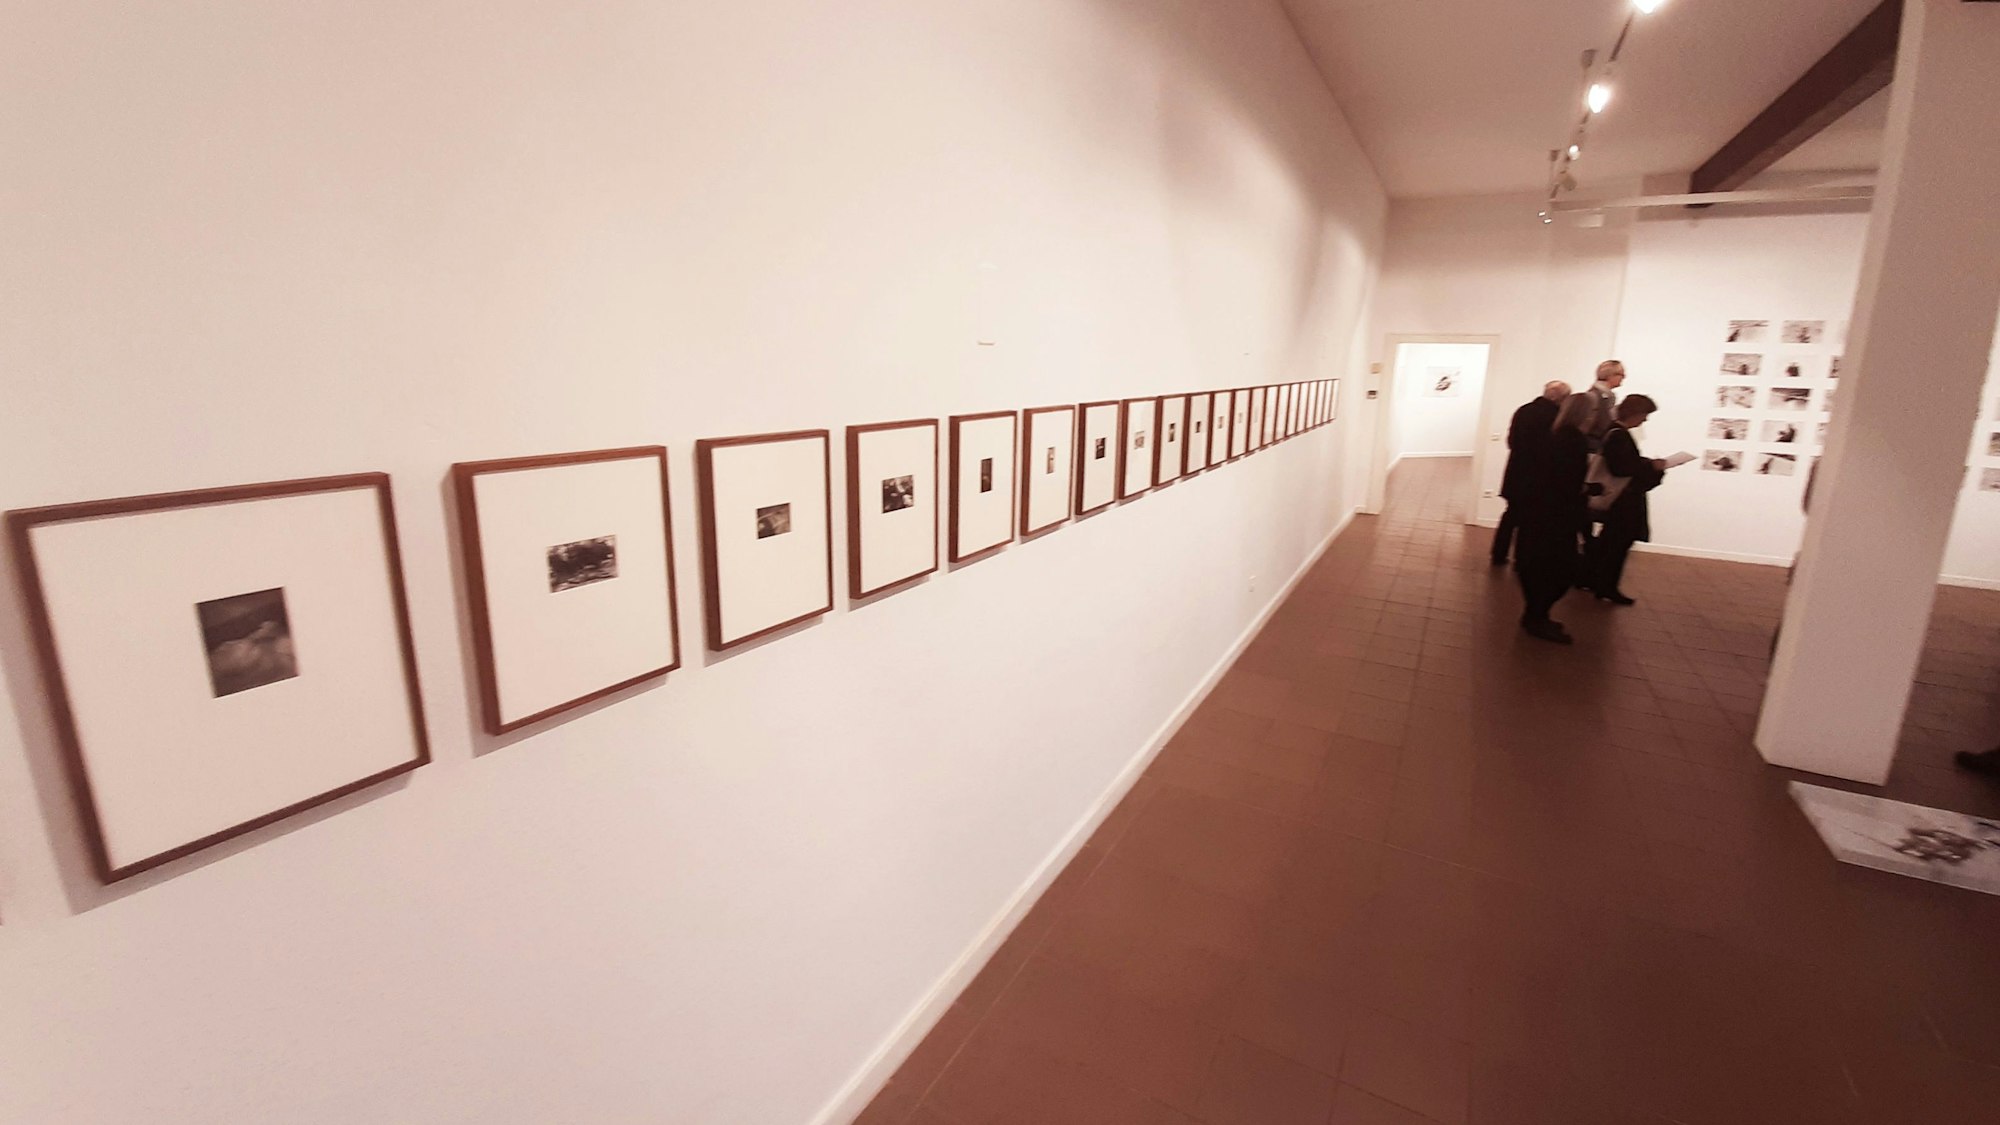 Ausstellung "An den Rändern" im Museum Morsbroich und dem Kunstverein Leverkusen, kuratiert von Miriam Edmunds (l.) aus Basel und Maxie Fischer aus Berlin.